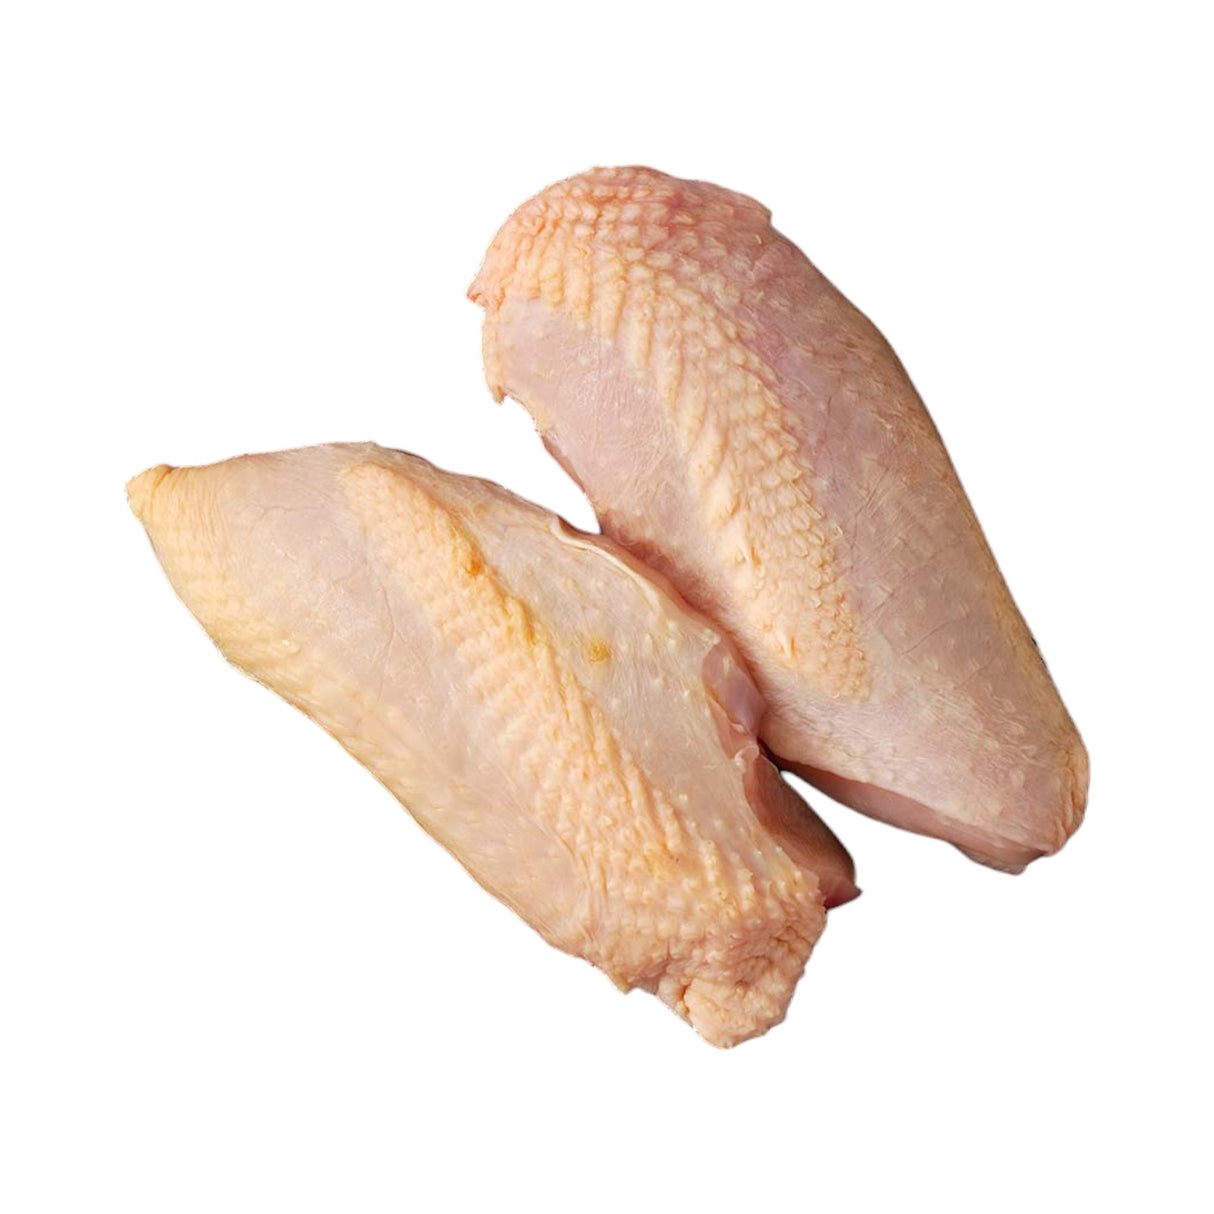 Adlington - English Label - Free Range Chicken Breast Fillets - Skin On (2 Fillets)